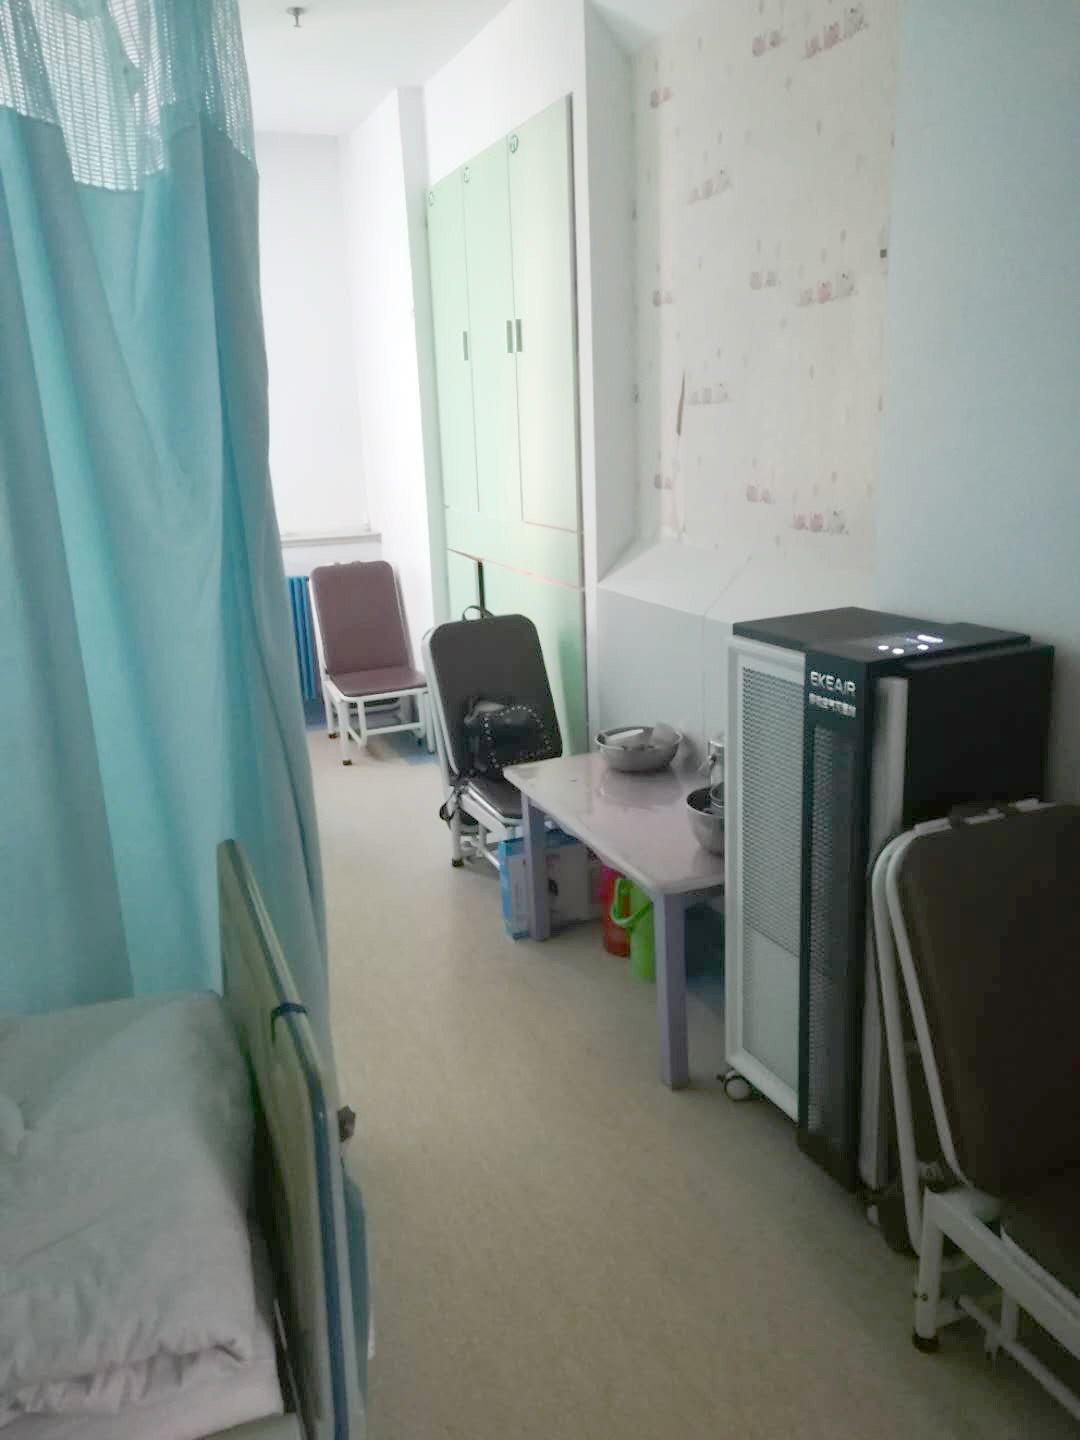 kasus perusahaan terbaru tentang Rumah Sakit Provincal Shandong